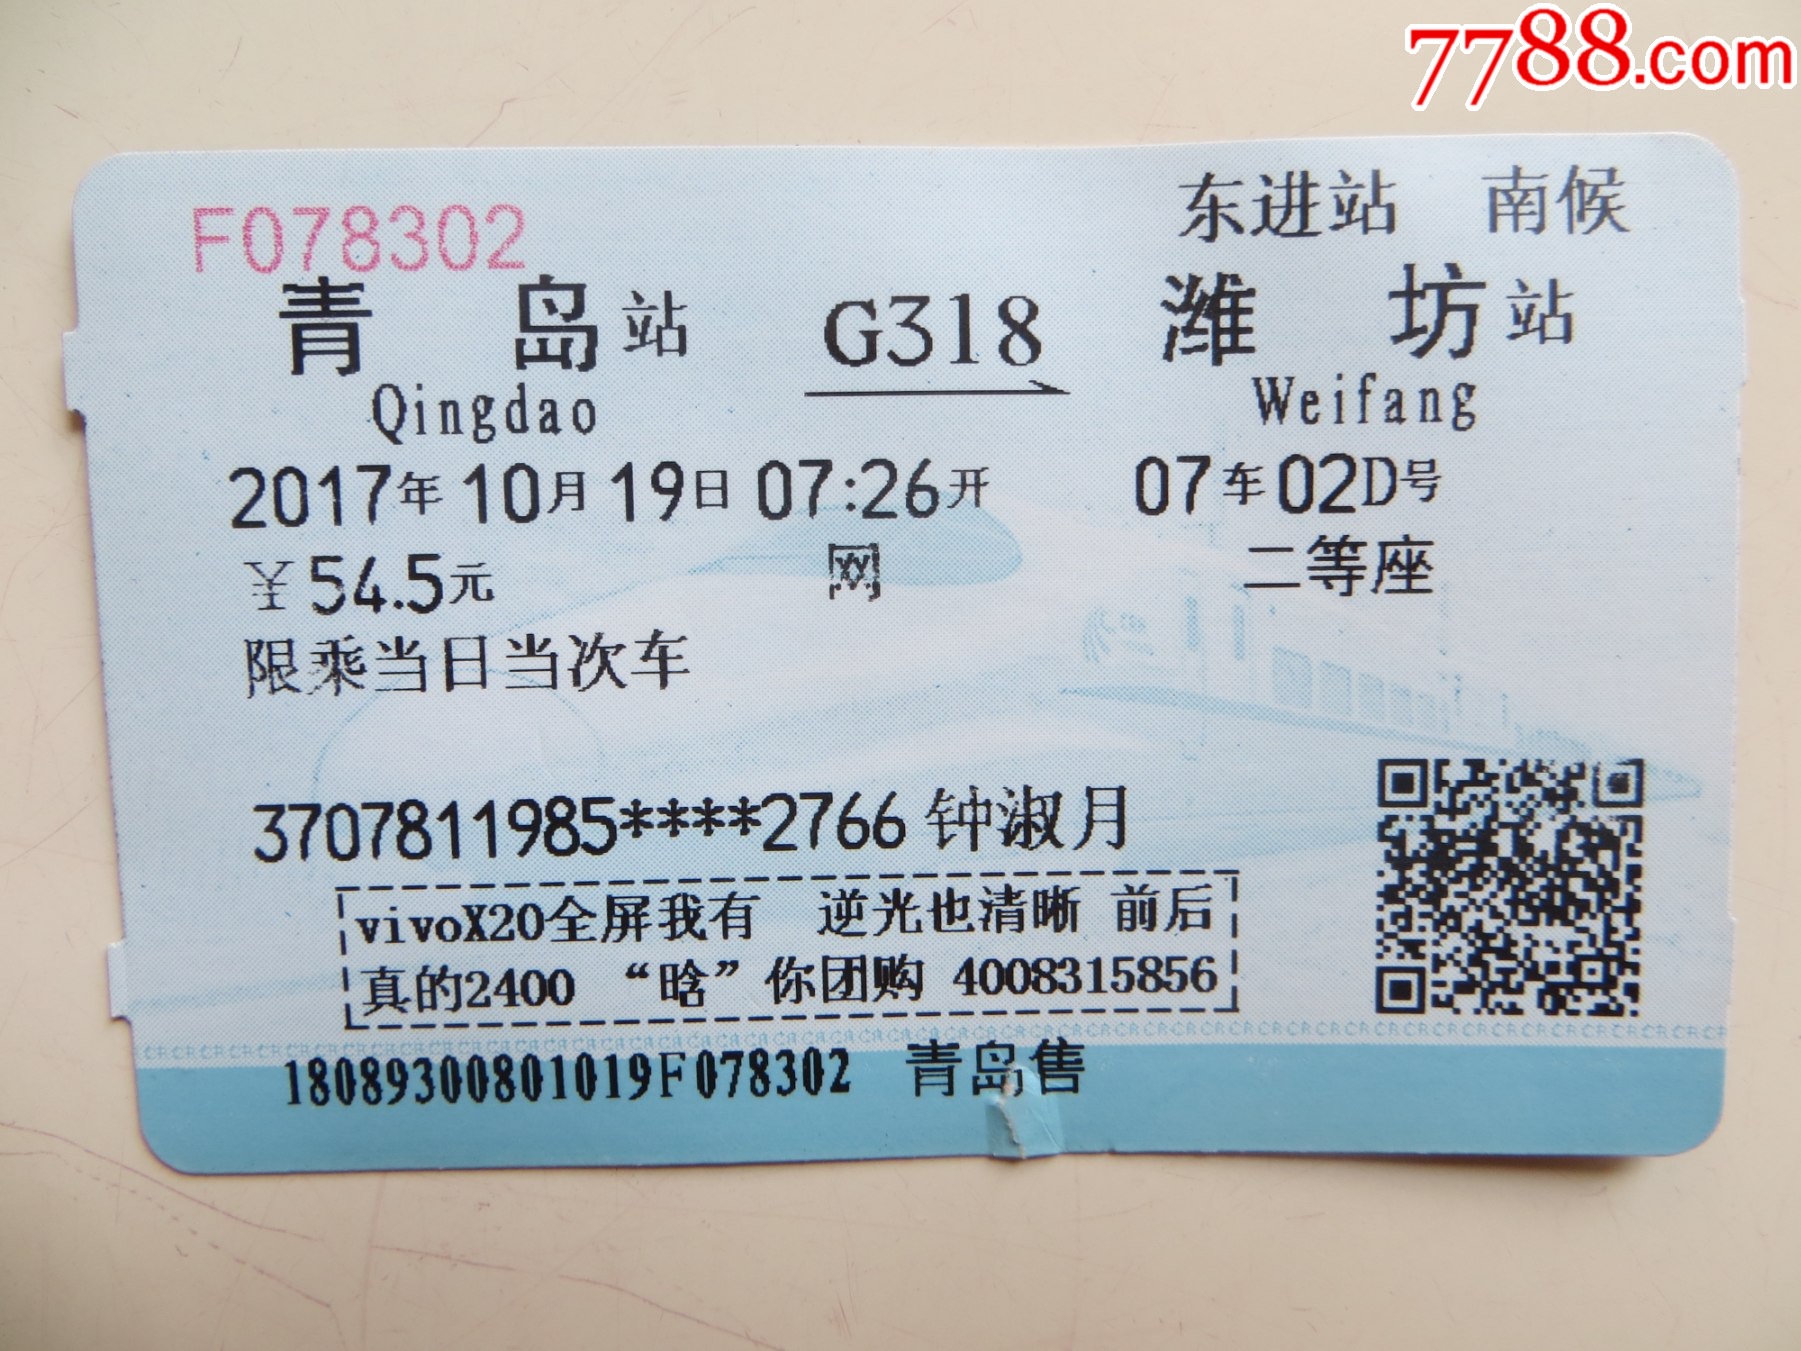 青岛汽车北站汽车票现在可以提前几天购买?本站有没有潍坊昌乐的汽车票-现在长途汽车票可以提前几天买